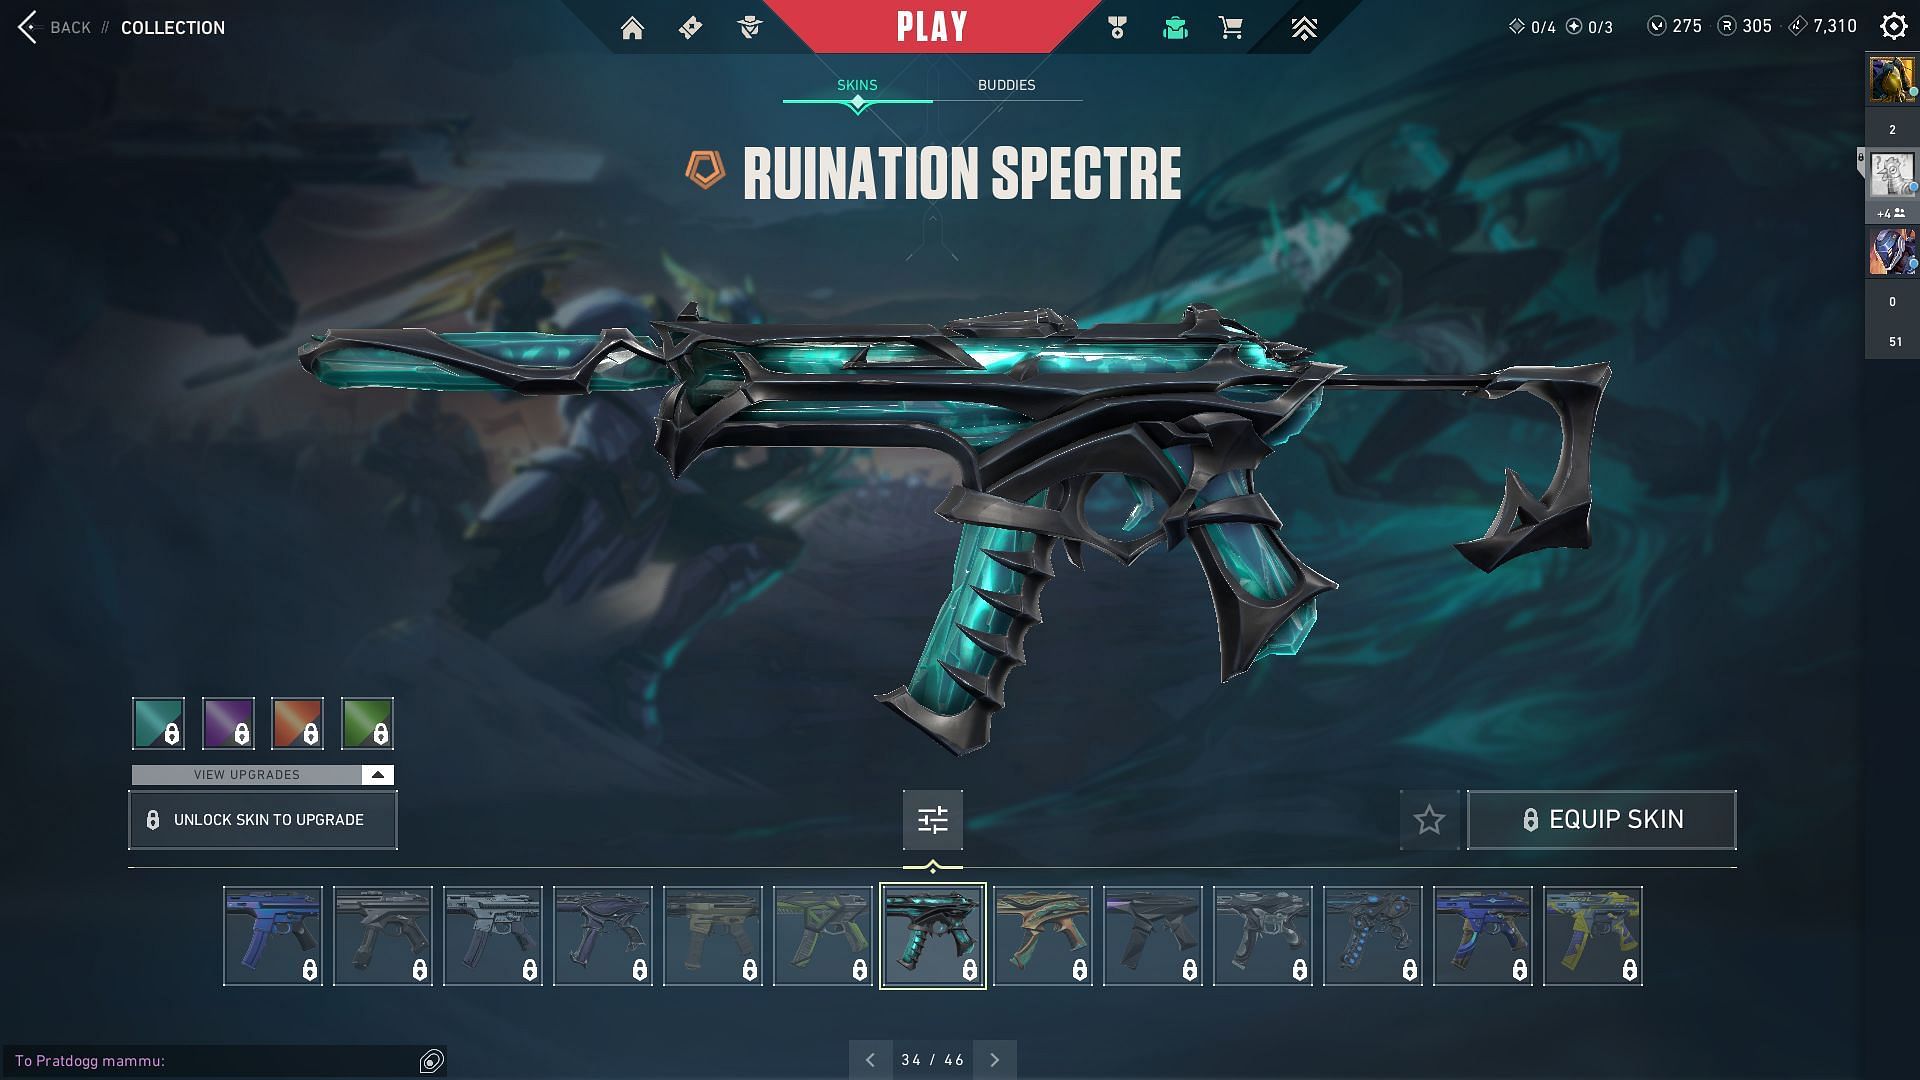 Ruination Spectre (Image via Sportskeeda and Riot Games)